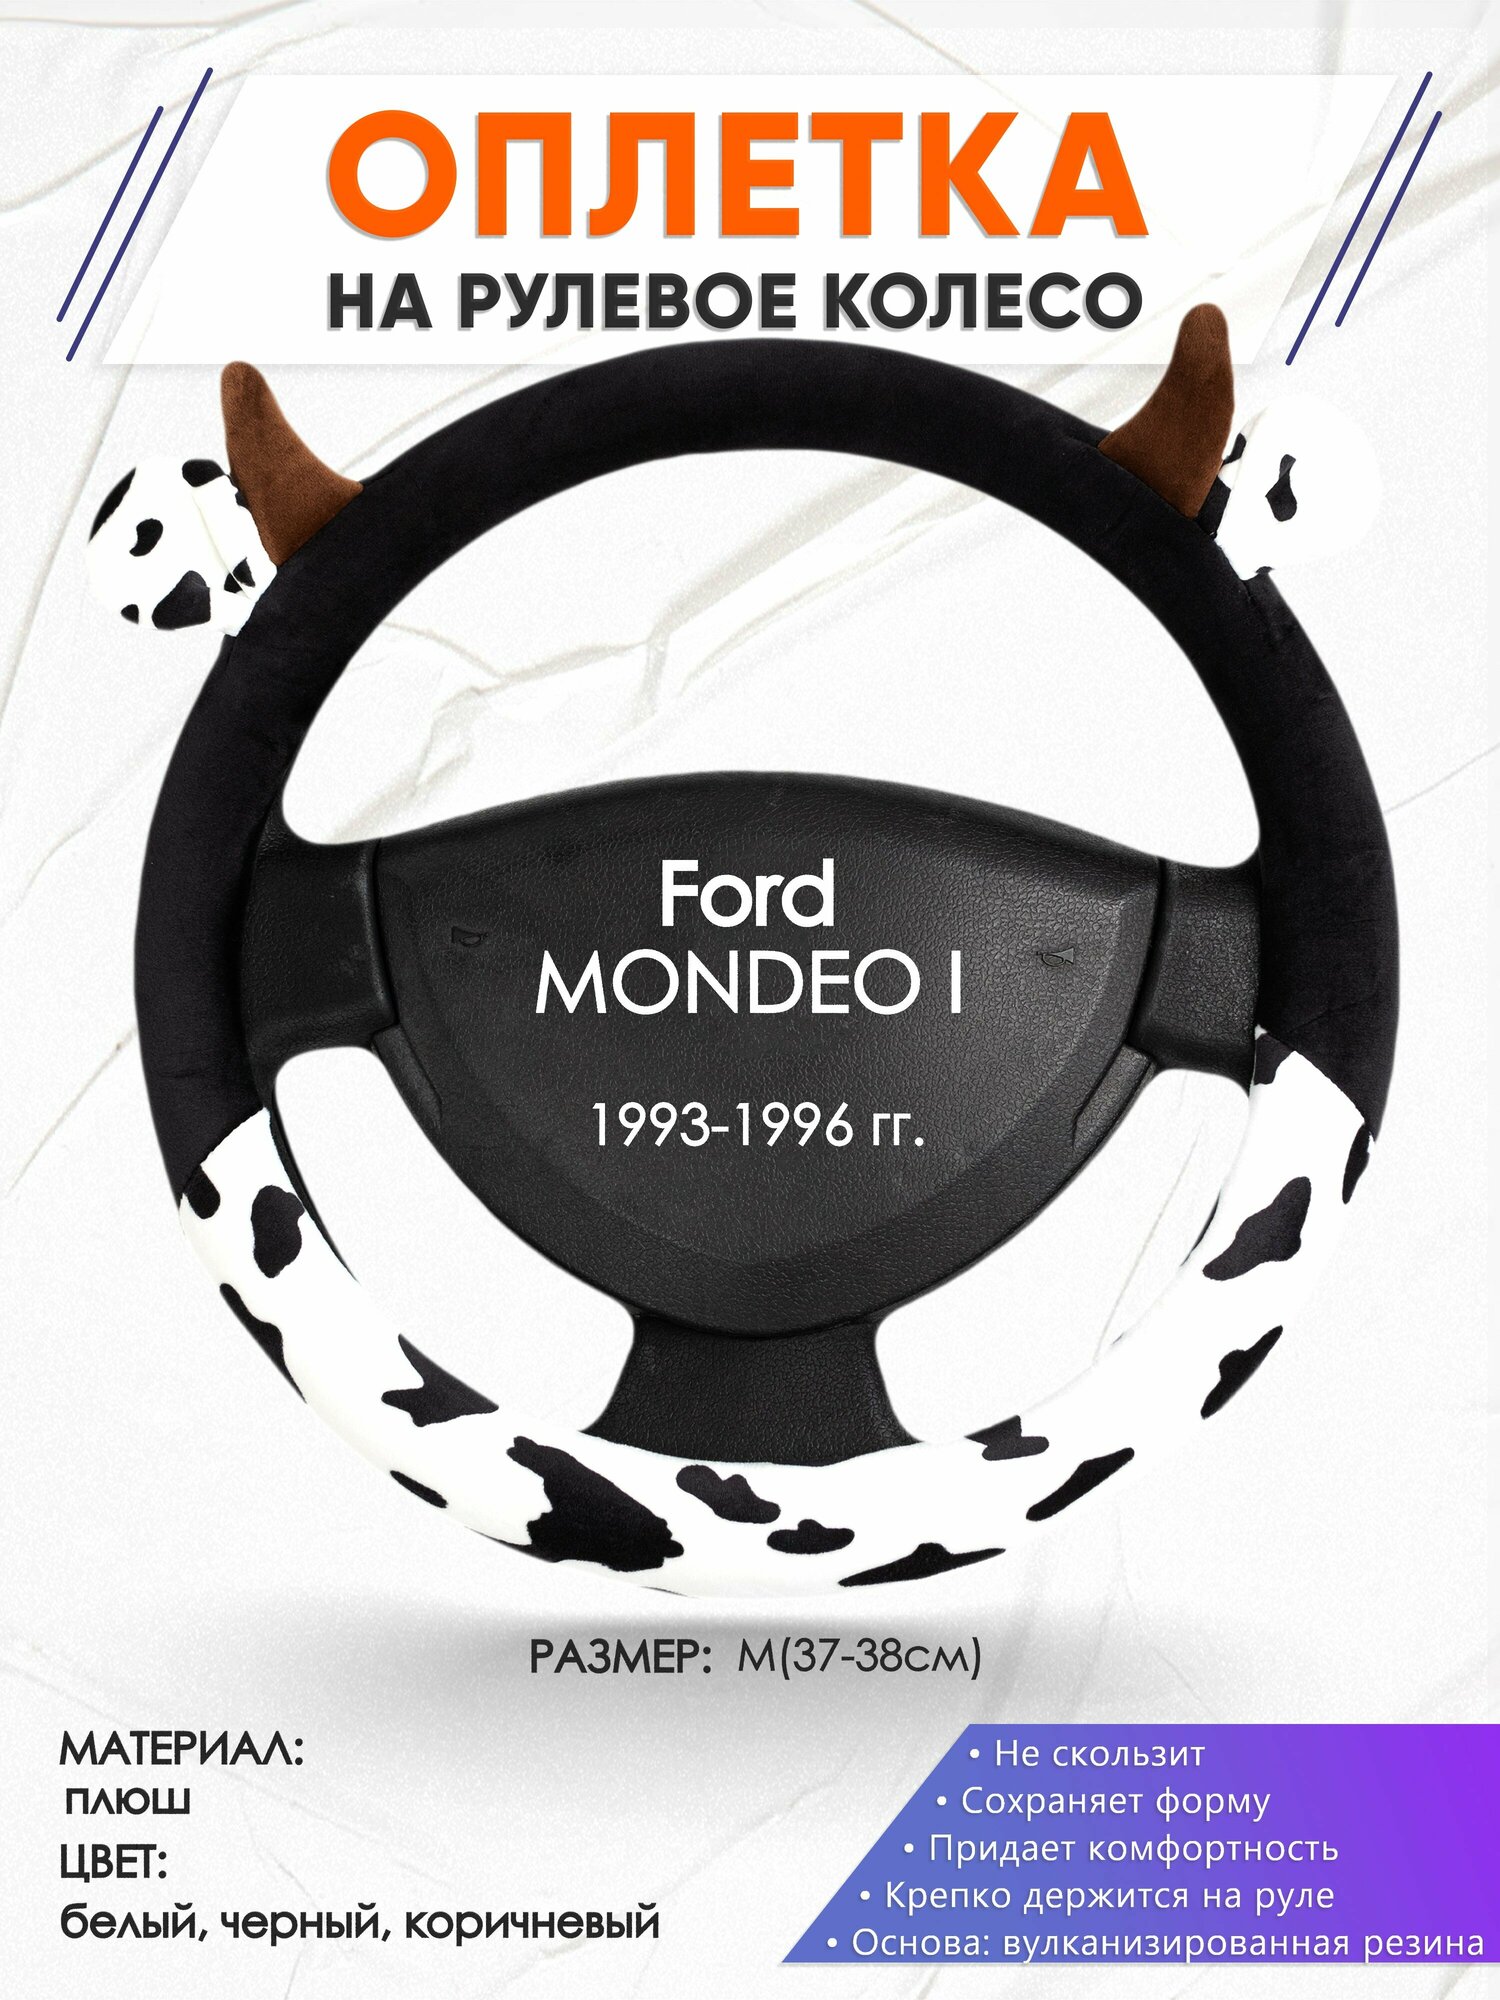 Оплетка наруль для Ford MONDEO 1(Форд Мондео 1) 1993-1996 годов выпуска, размер M(37-38см), Искусственный мех 39